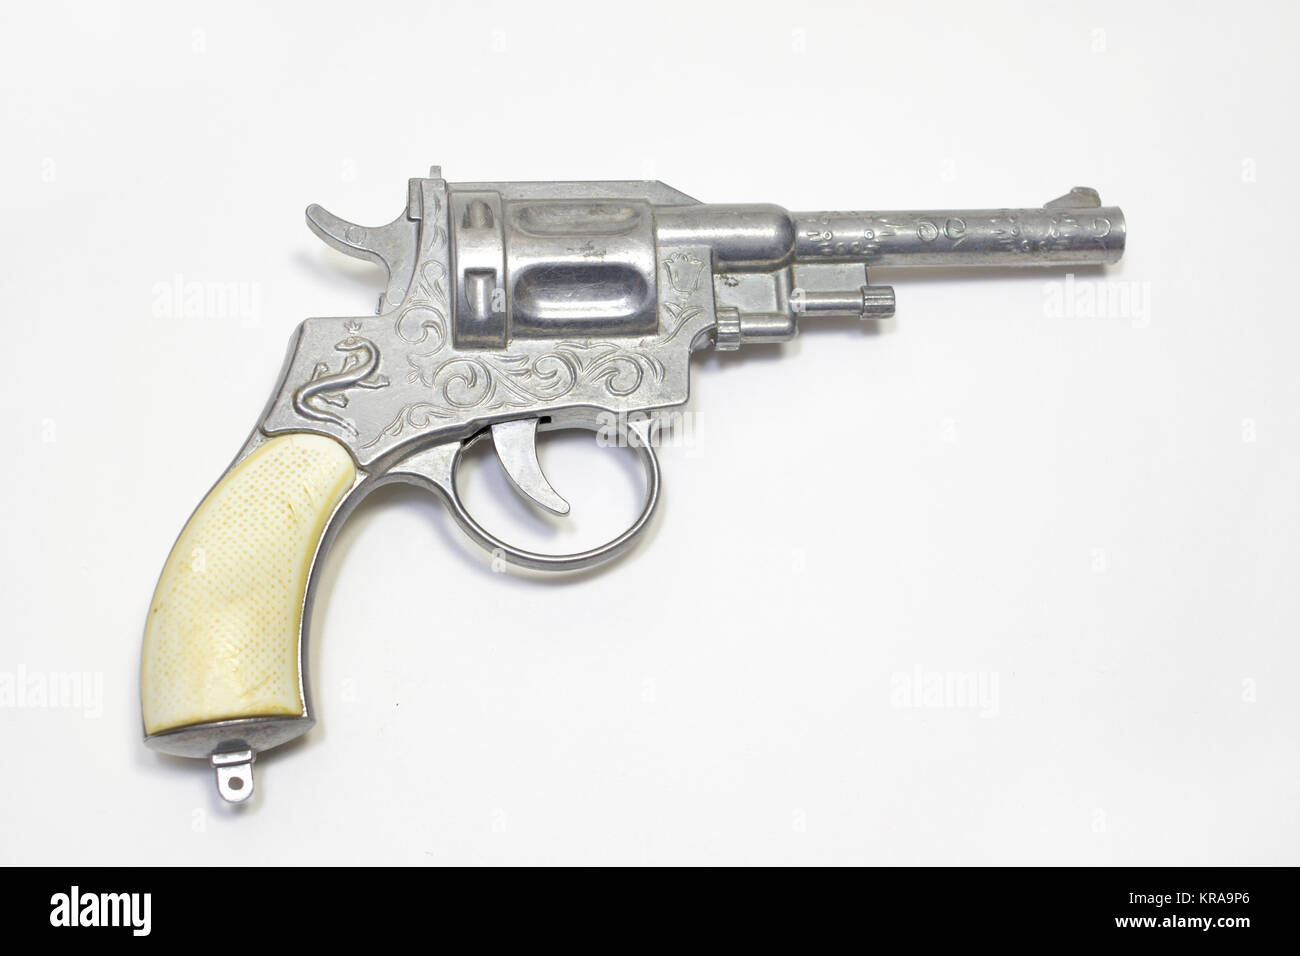 Pistola de juguete: revolver para disparar fulminantes, ornamentada, con  asas blancas Fotografía de stock - Alamy